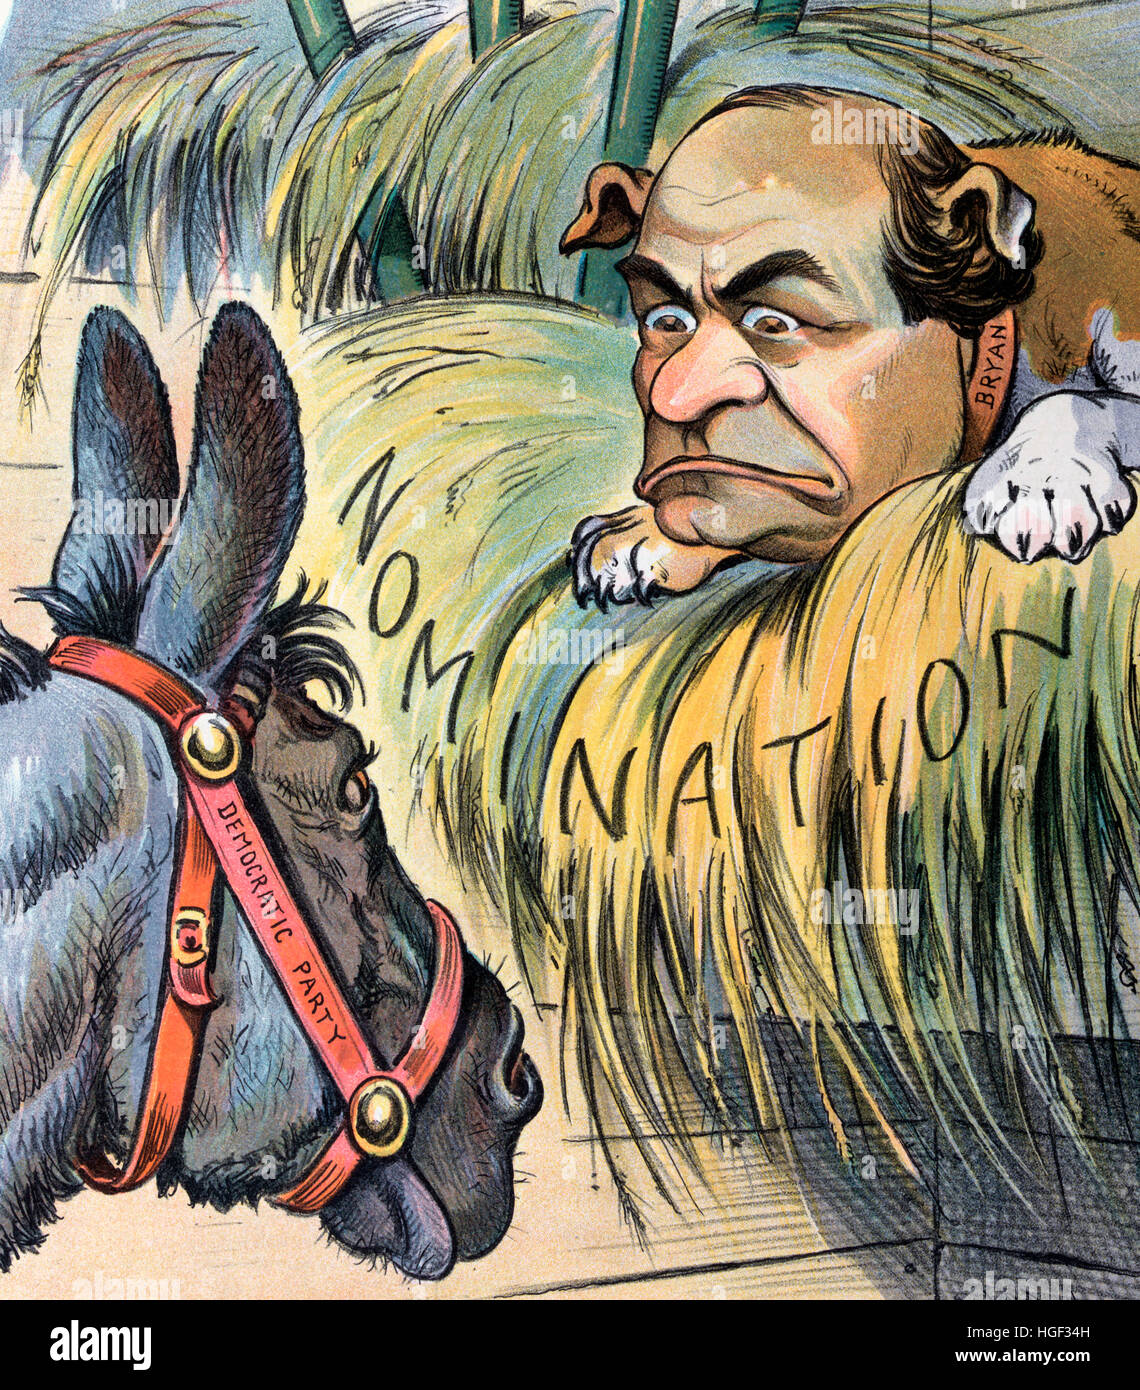 Le chien du jardinier Caricature politique montre un âne étiqueté "démocratique" à regarder un chien portant la mention "Bryan" avec le visage de William Jennings Bryan, couché sur un lit de foin marqués 'candidatures". Banque D'Images